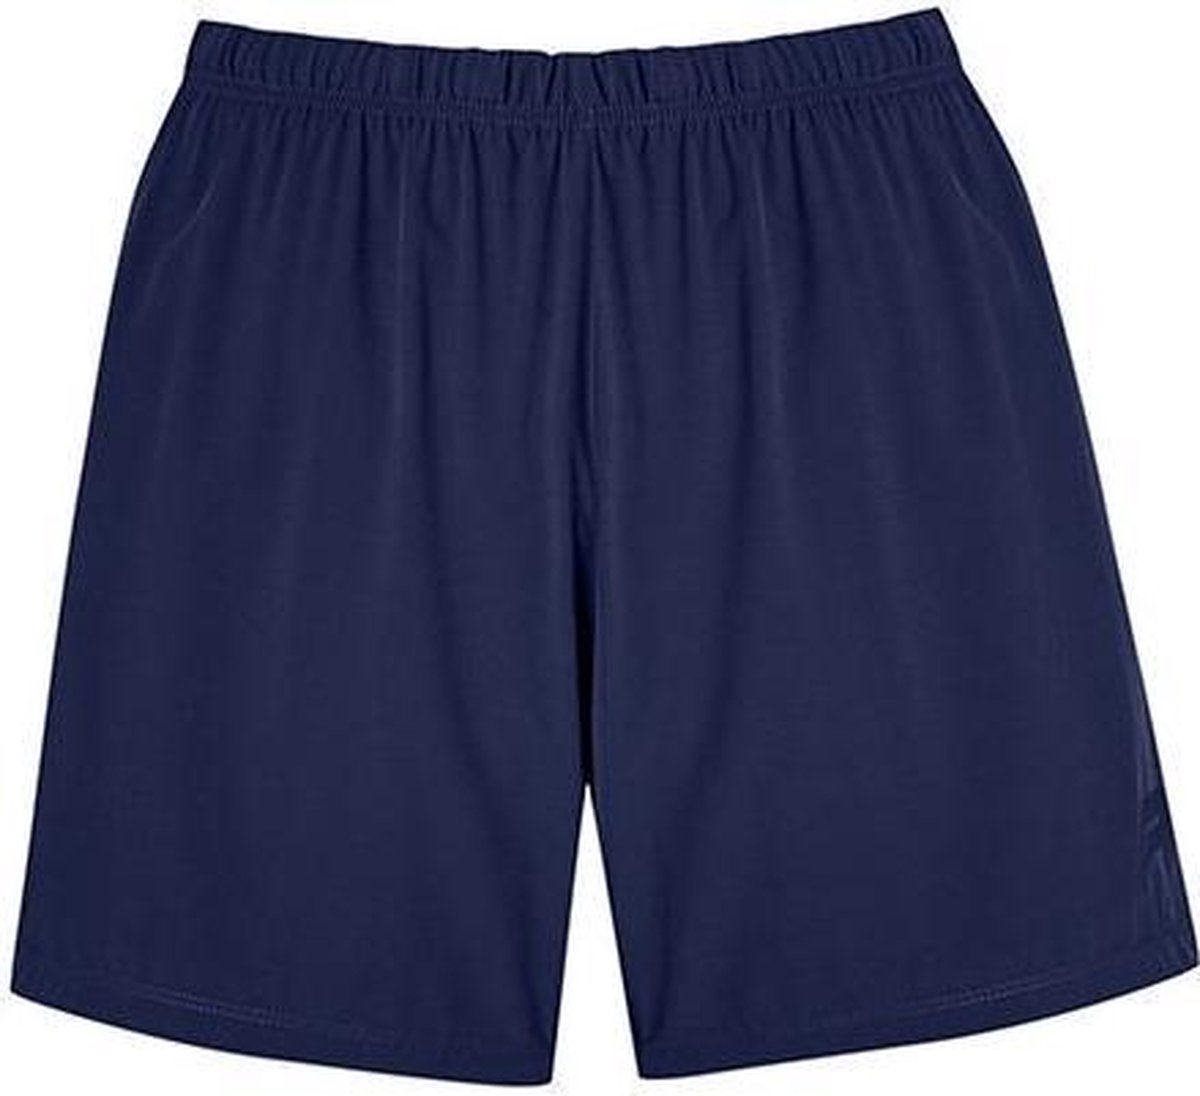 6inch Shorts Blauw - Pursue Fitness